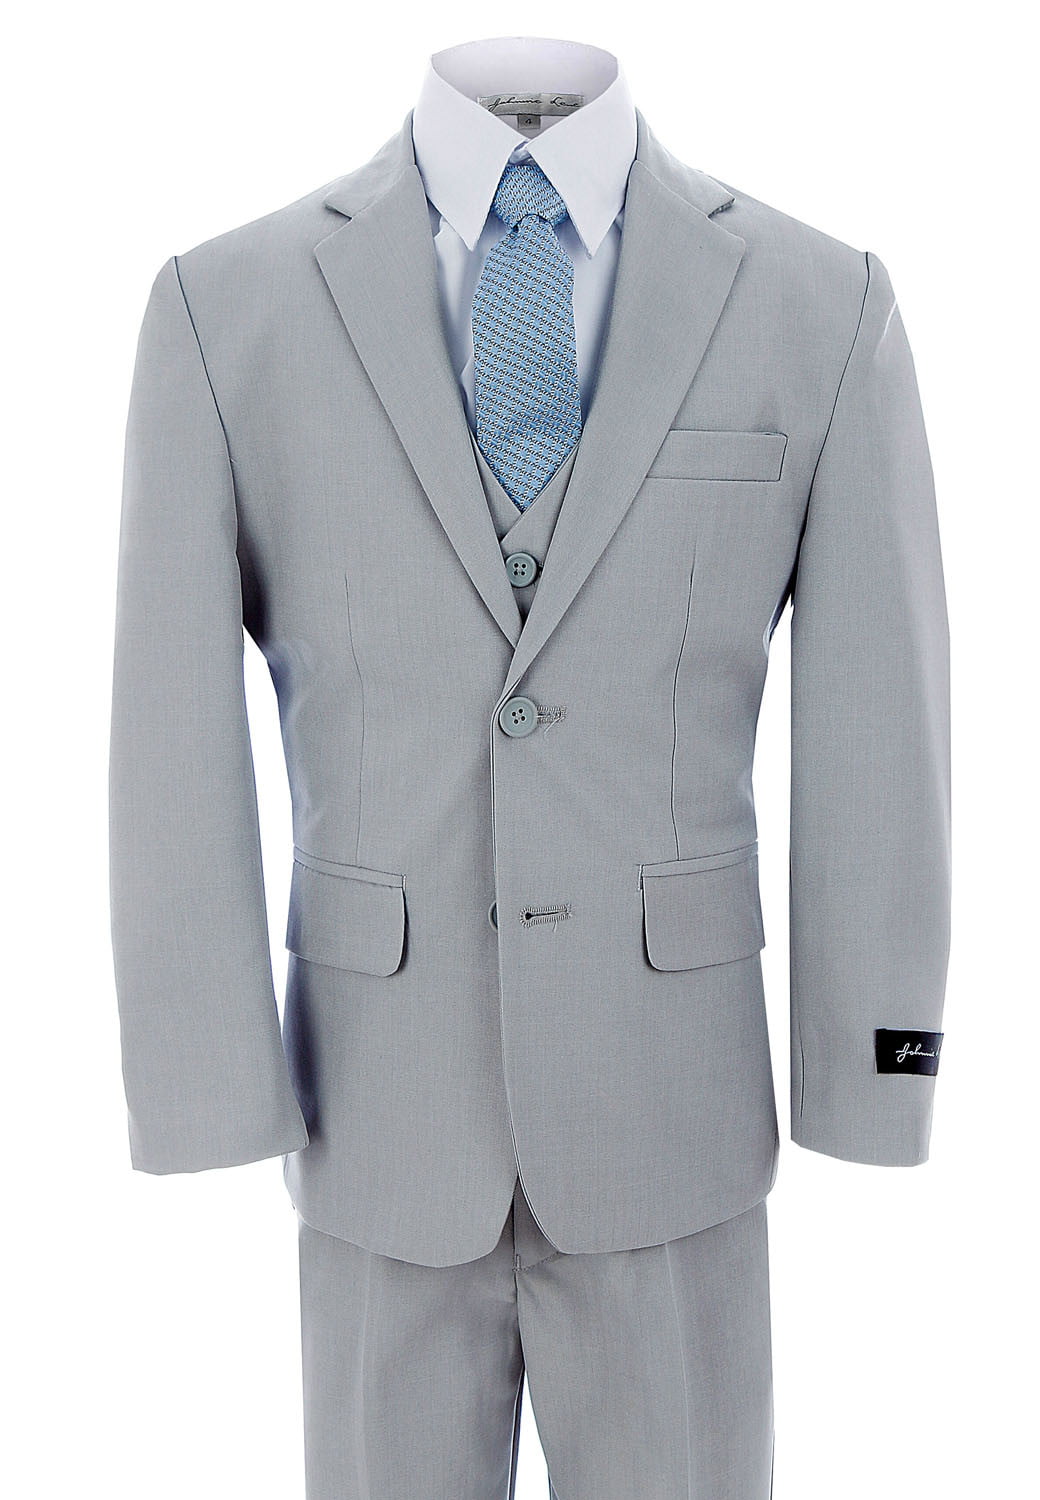 JL5040 Johnnie Lene Dress Up Boys Designer Suit Set 